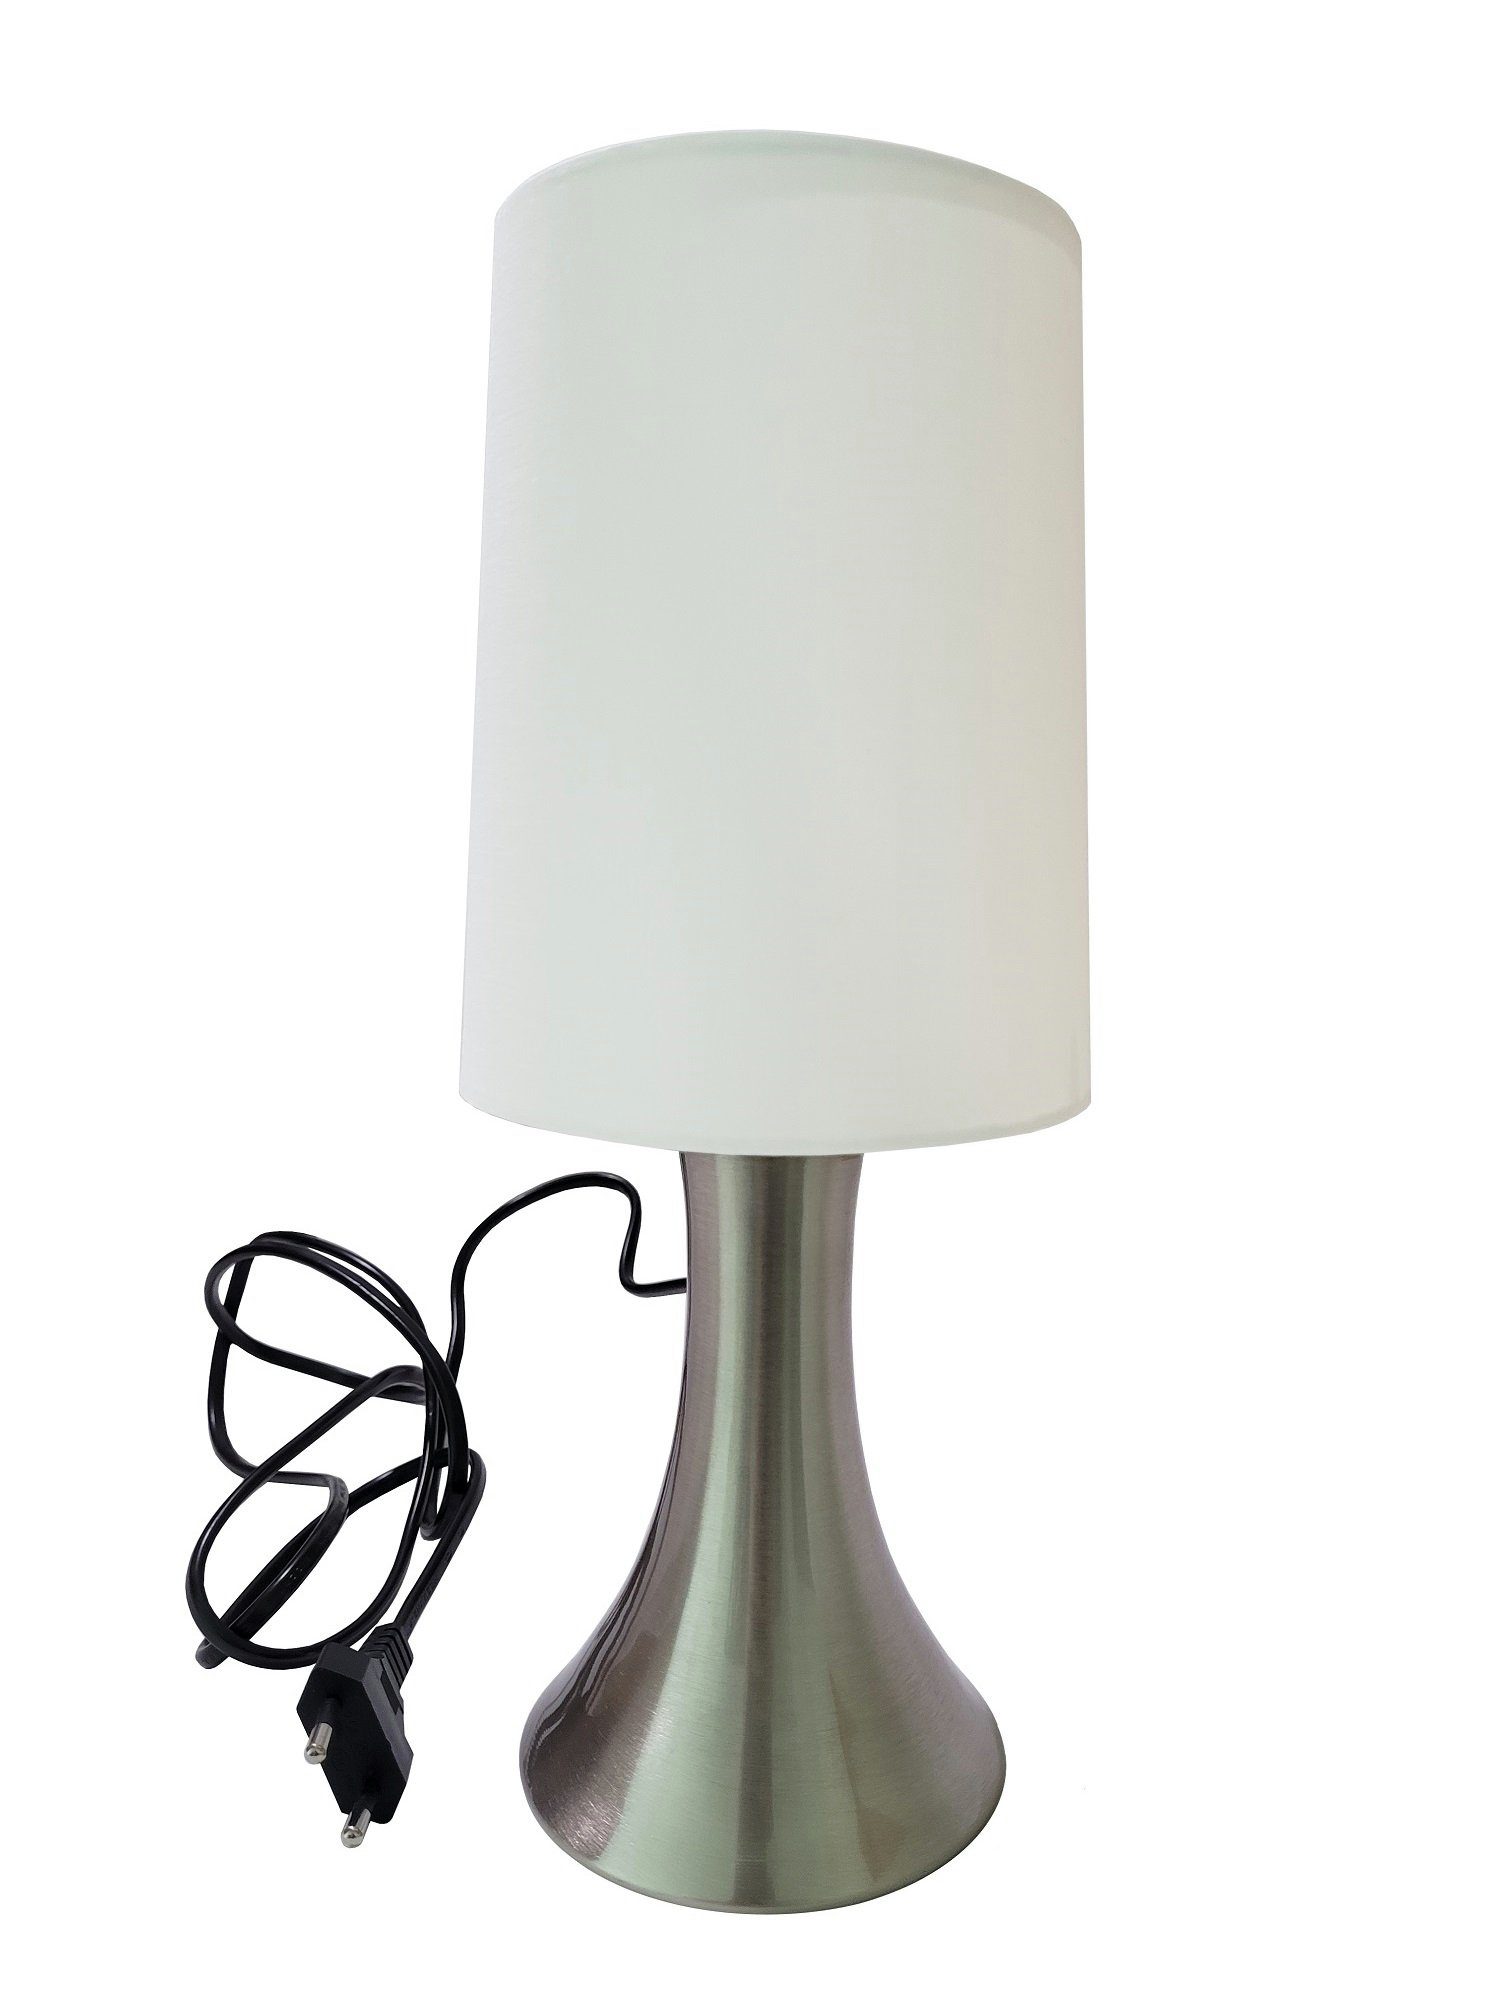 Provance Nachttischlampe Tischlampe mit Touch-Dimmer Weiß E14